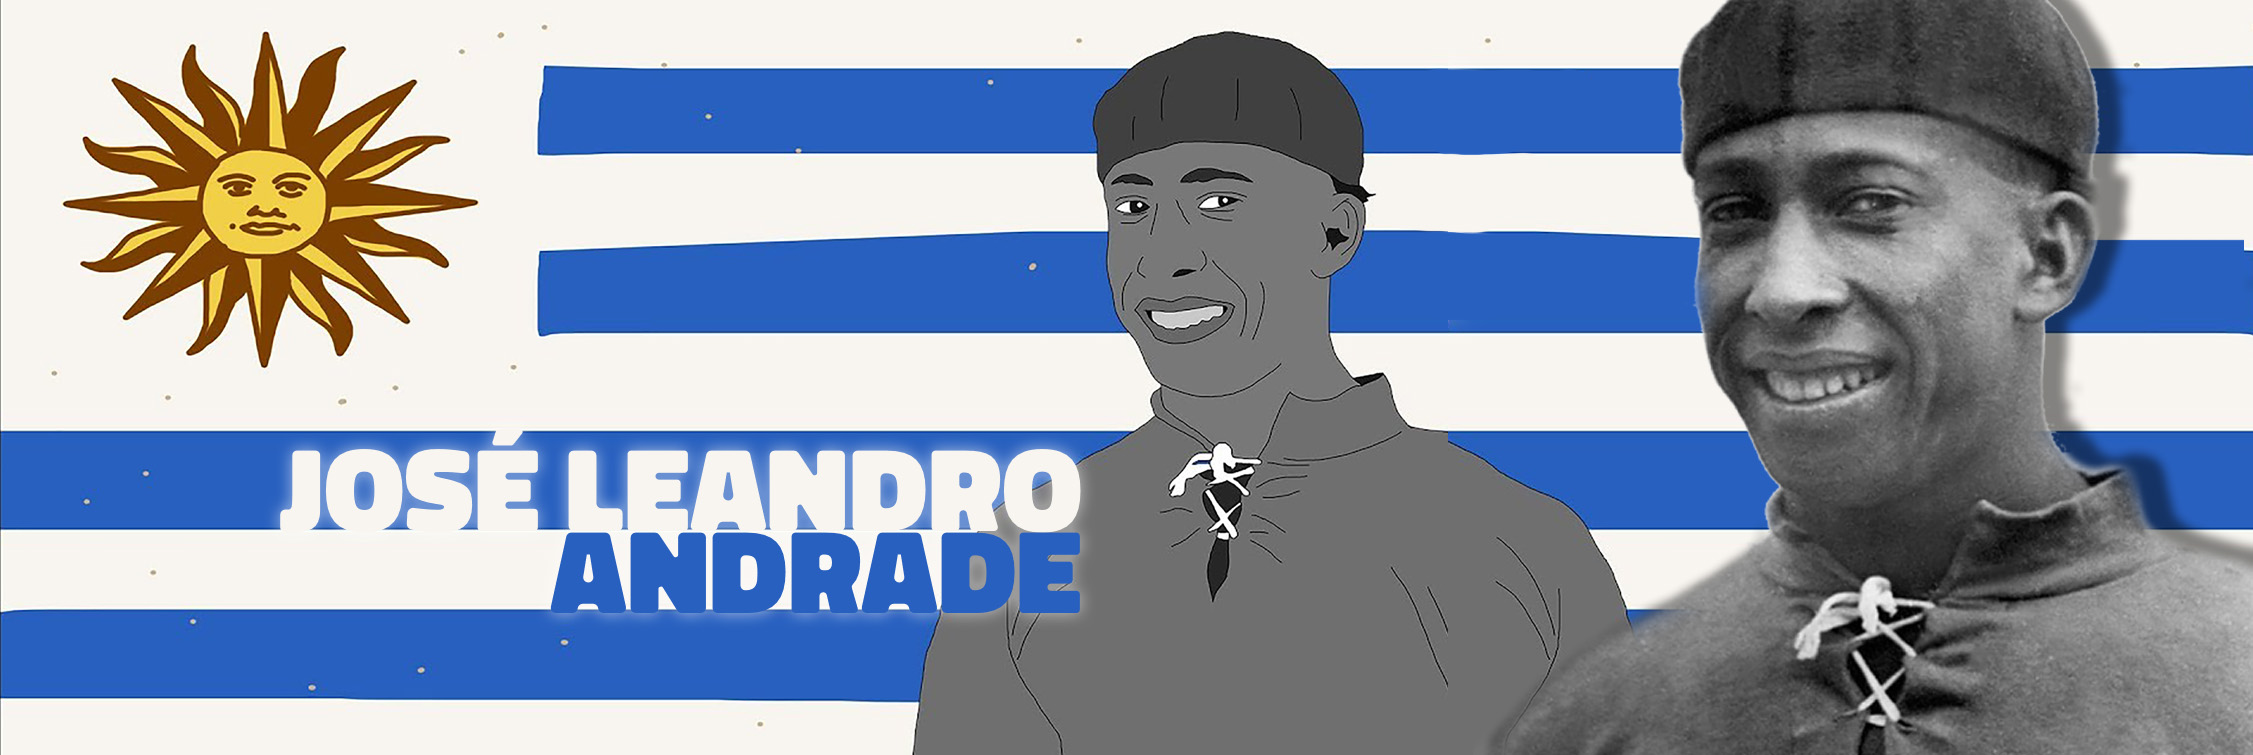 José Leandro Andrade: 'La Maravilla Negra' que murió en el olvido